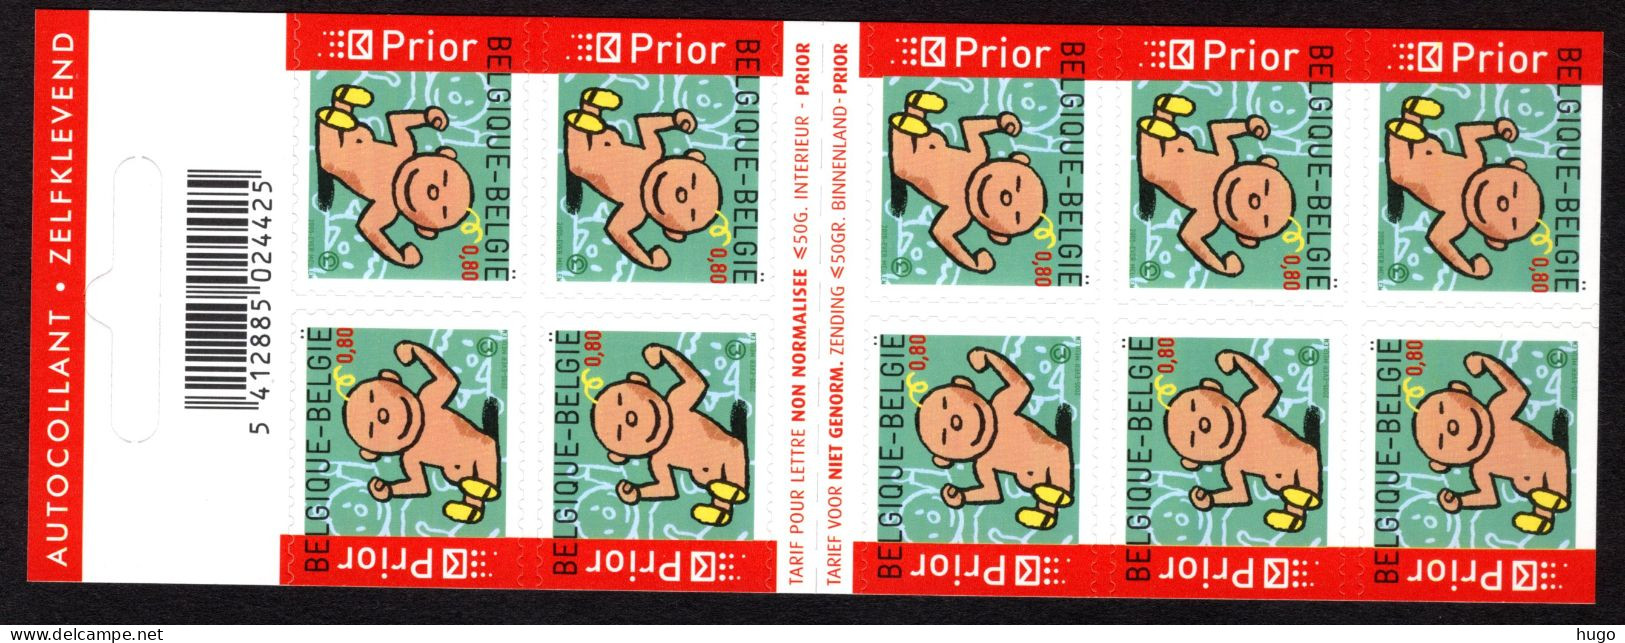 B53 MNH 2005 - Postzegelboekje - Non Classés